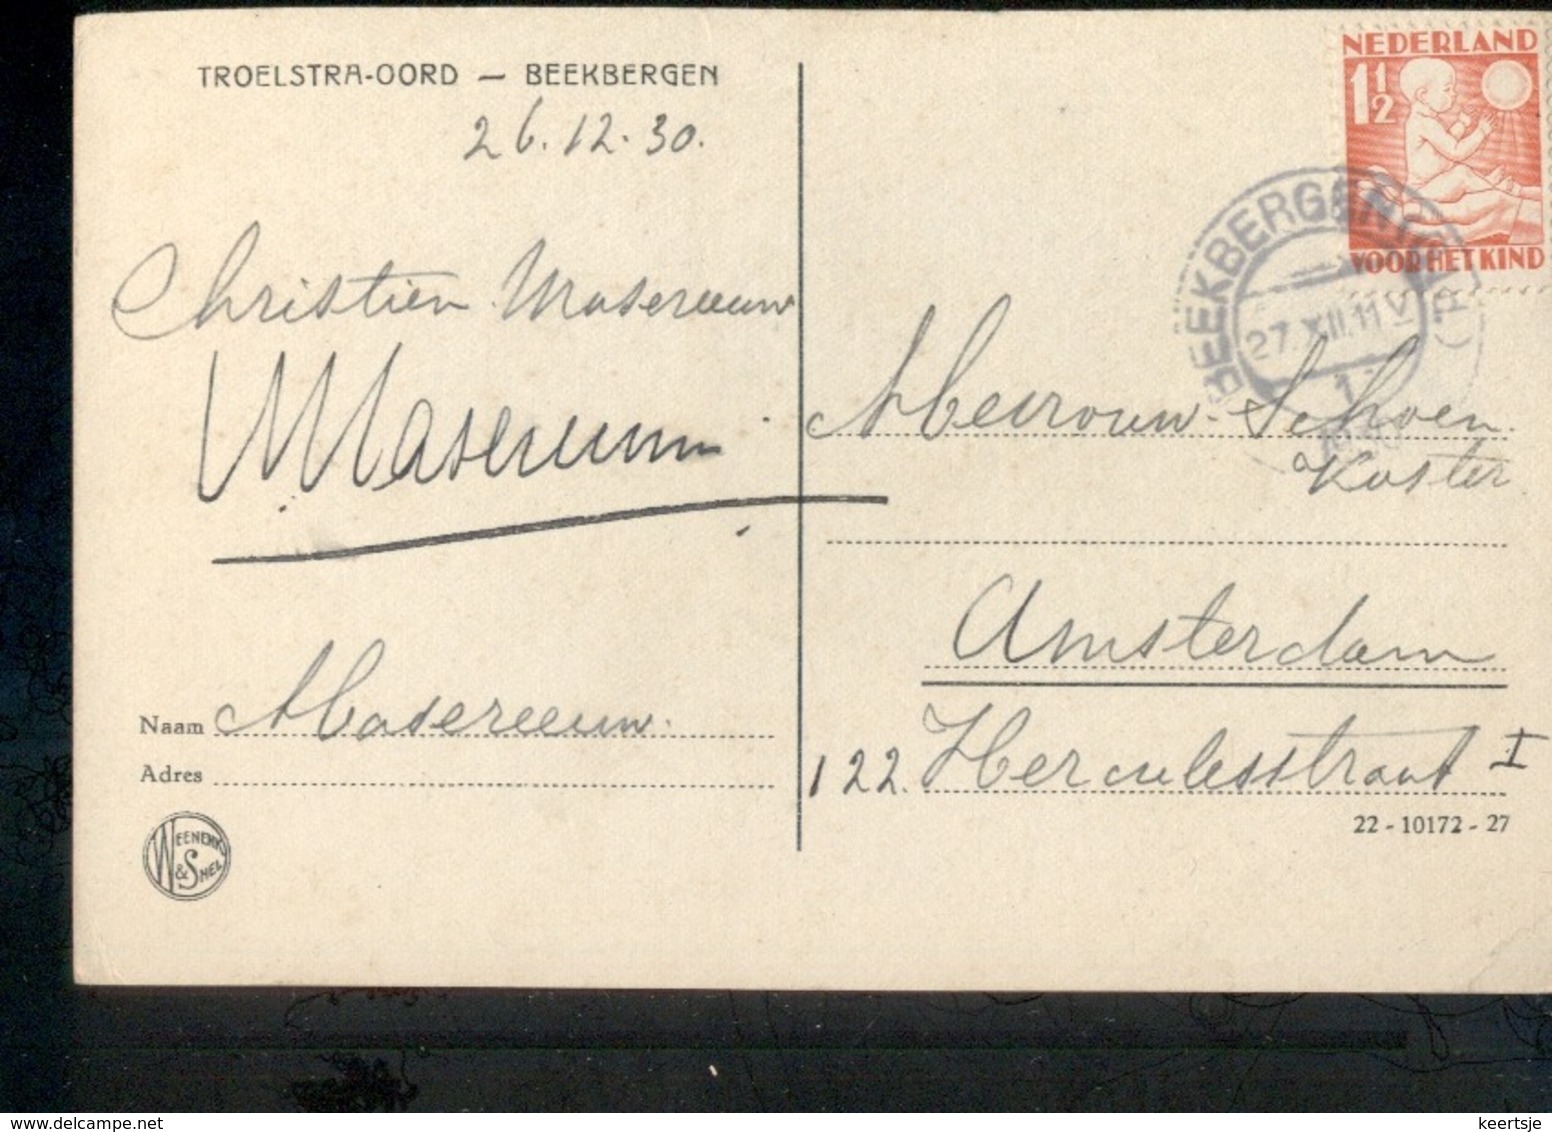 Beekbergen - 1930 - Troelstra Oord - Postal History